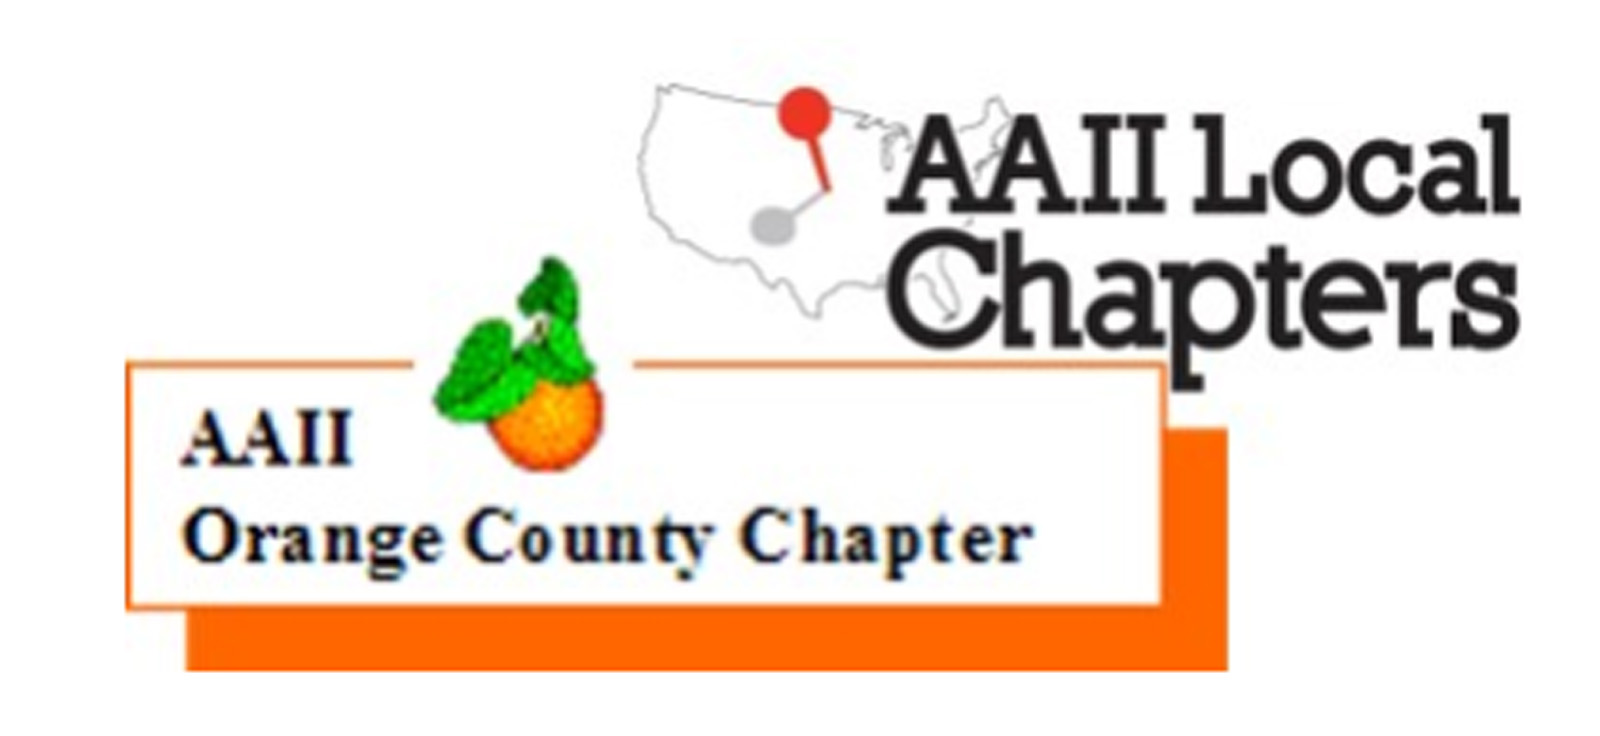 AAII Orange County Chapter Logo